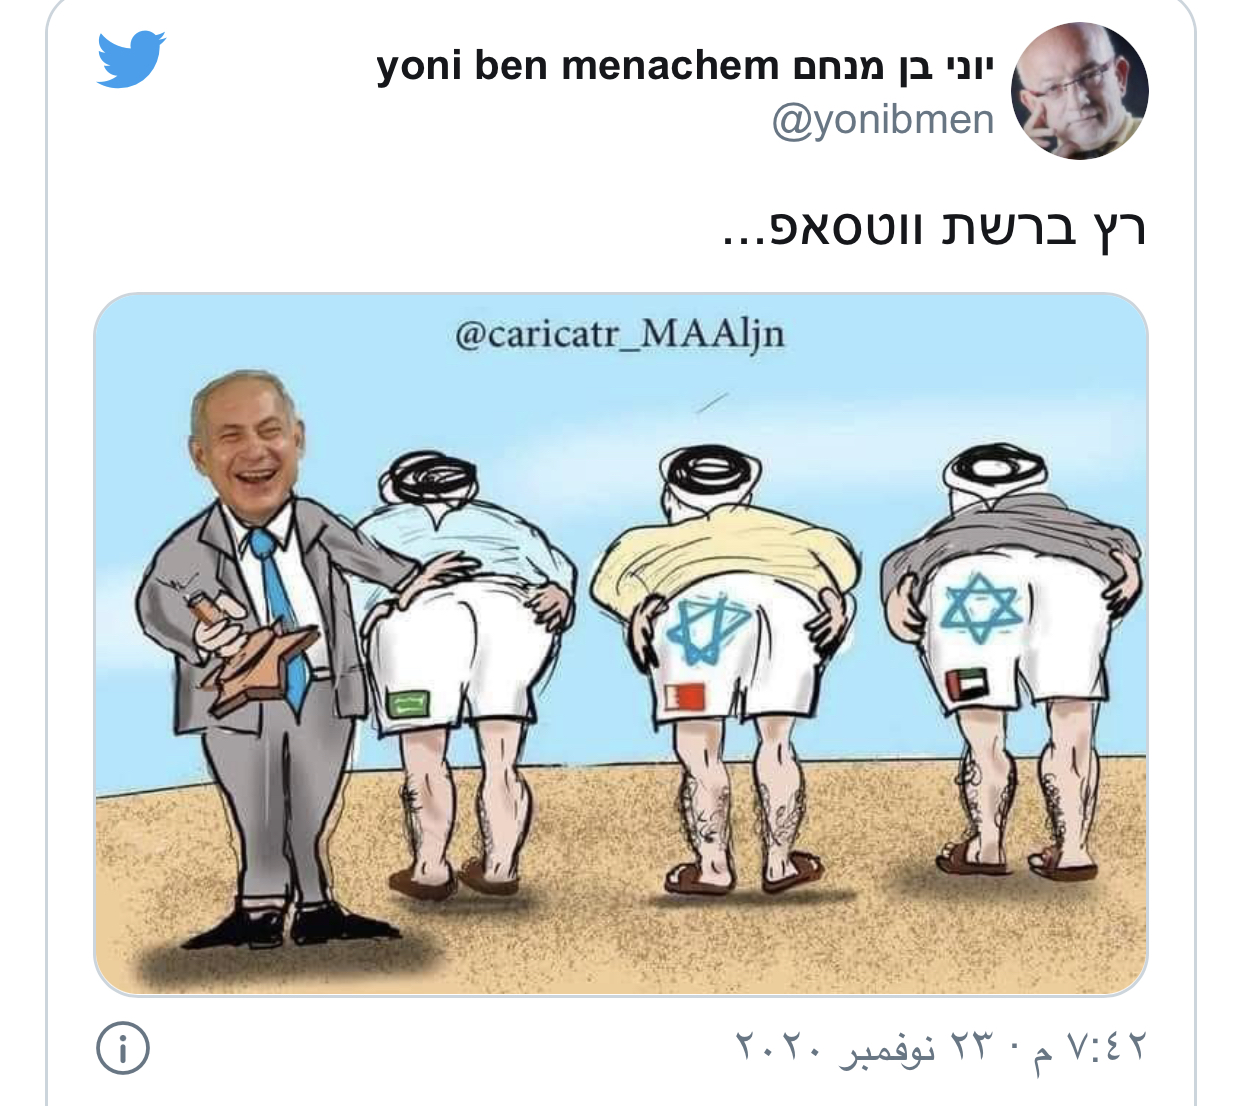 "كاريكاتير" كيف ينظر نتنياهو إلى المطبّعين العرب؟